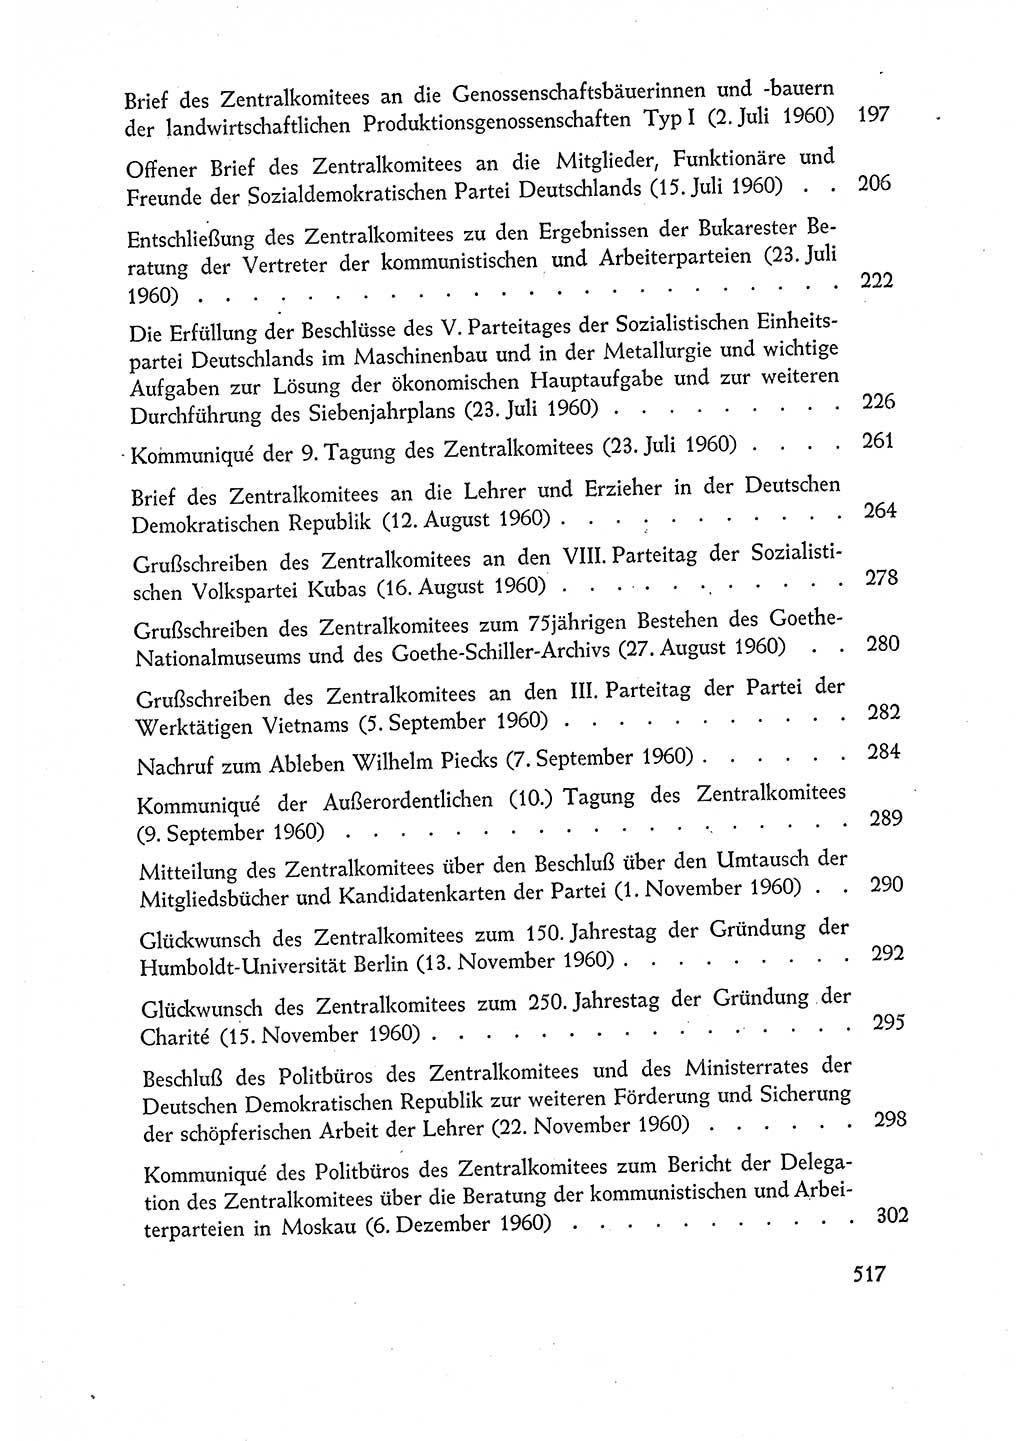 Dokumente der Sozialistischen Einheitspartei Deutschlands (SED) [Deutsche Demokratische Republik (DDR)] 1960-1961, Seite 517 (Dok. SED DDR 1960-1961, S. 517)